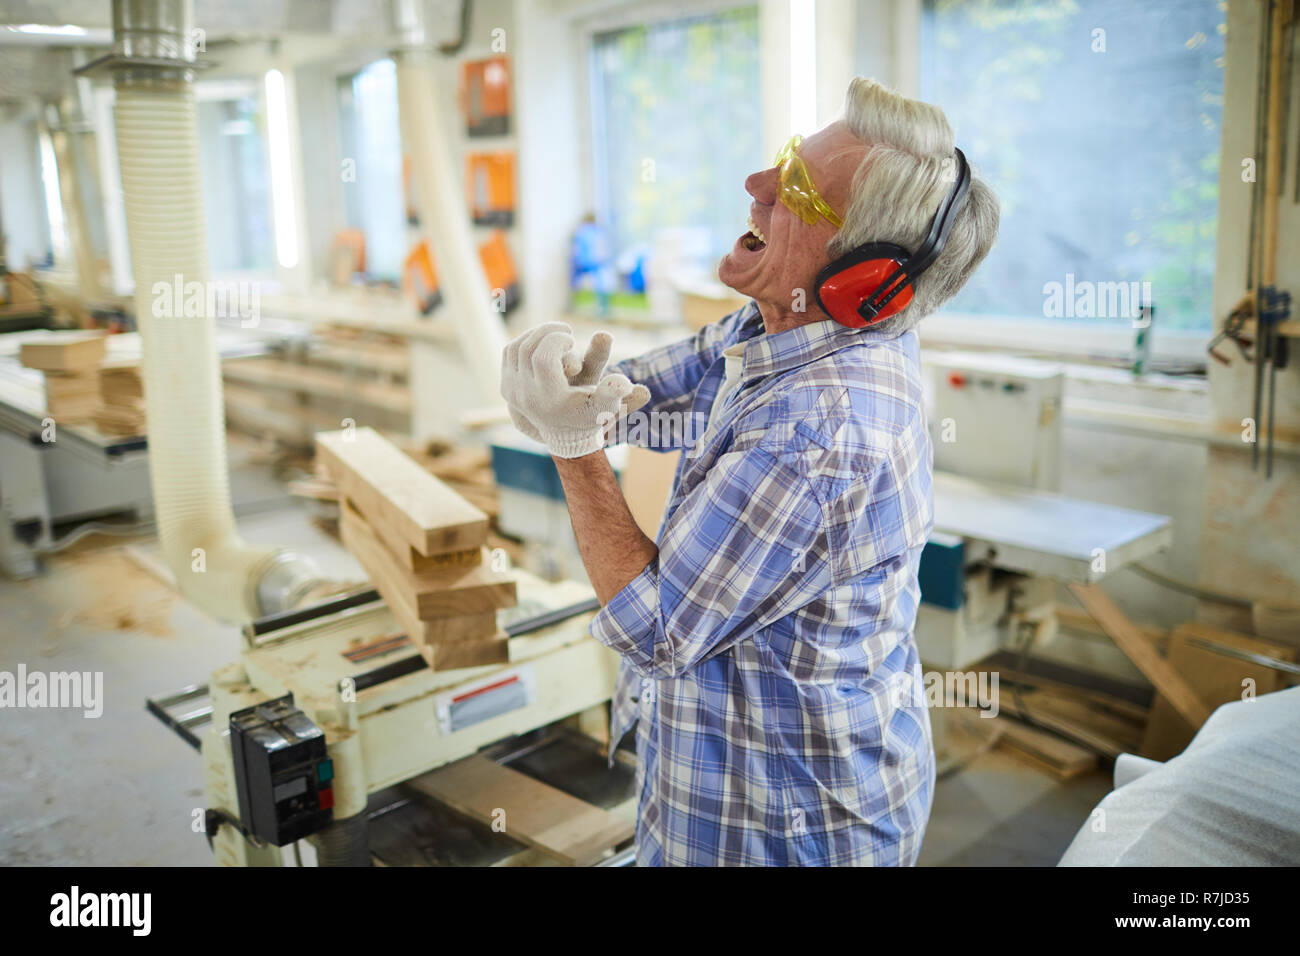 Carpenter lastimar a mano en el taller Foto de stock